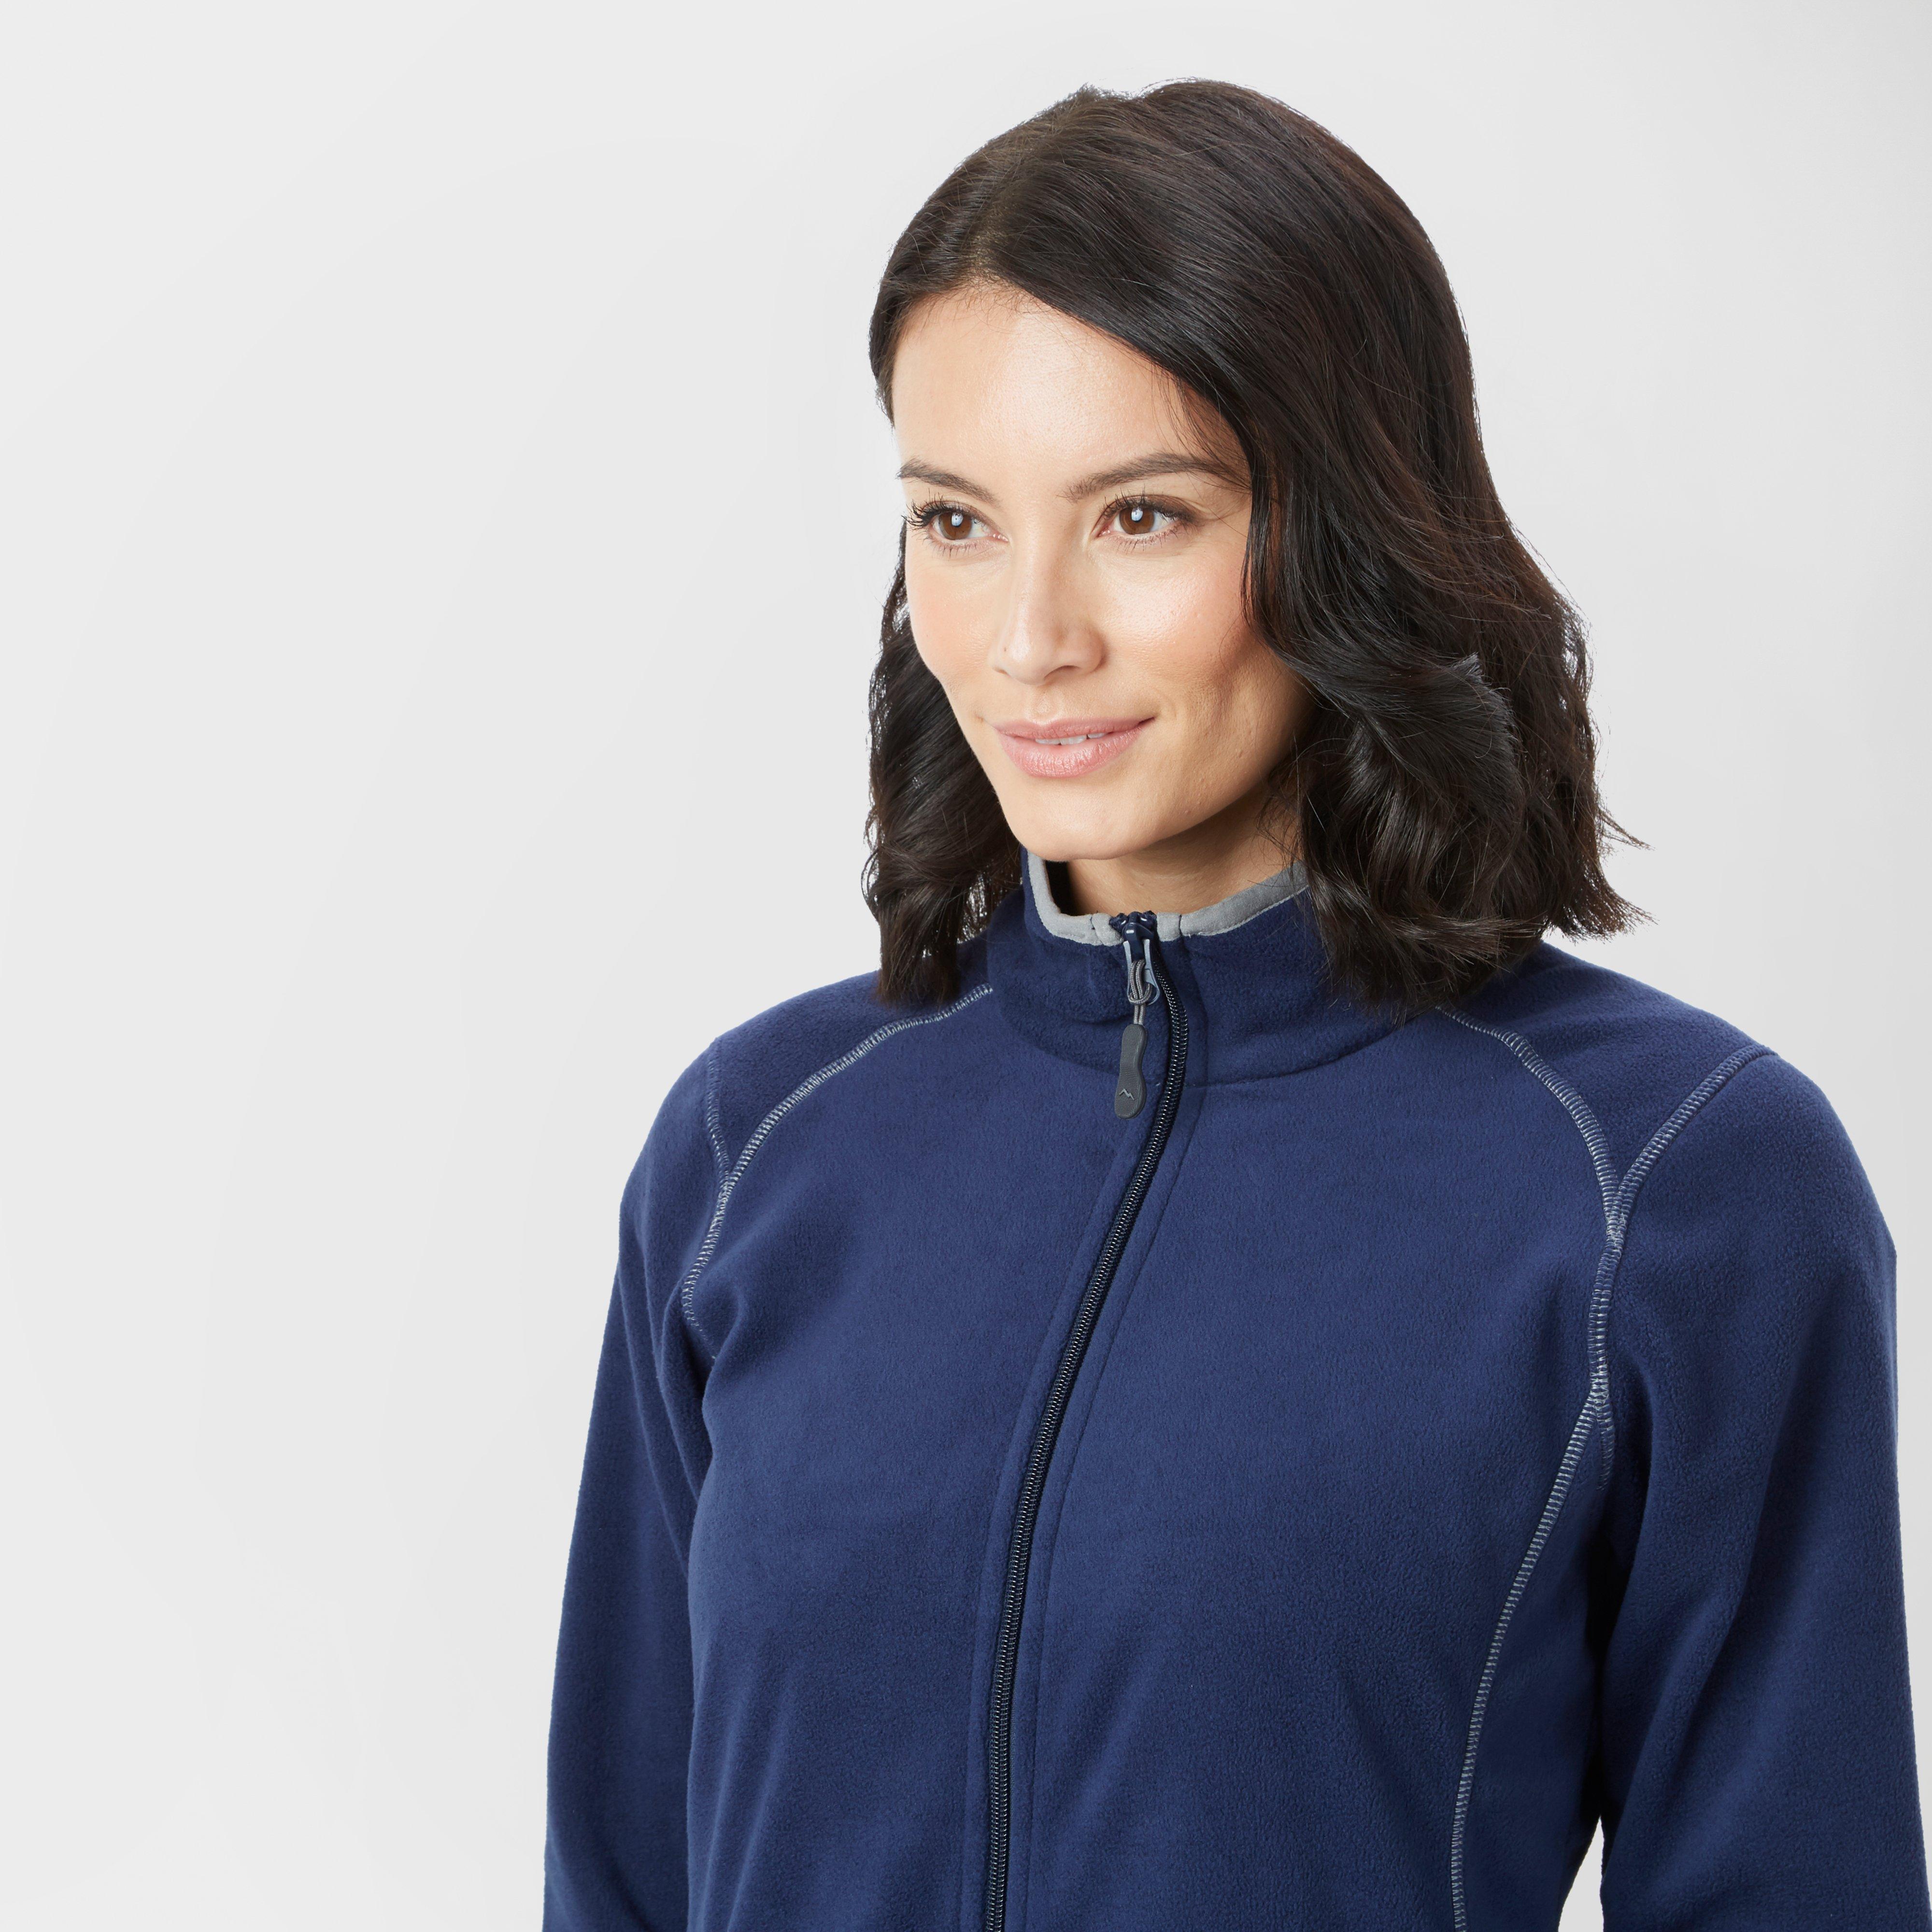 New Peter Storm Women’s Long Sleeve Full Zip Grasmere Fleece